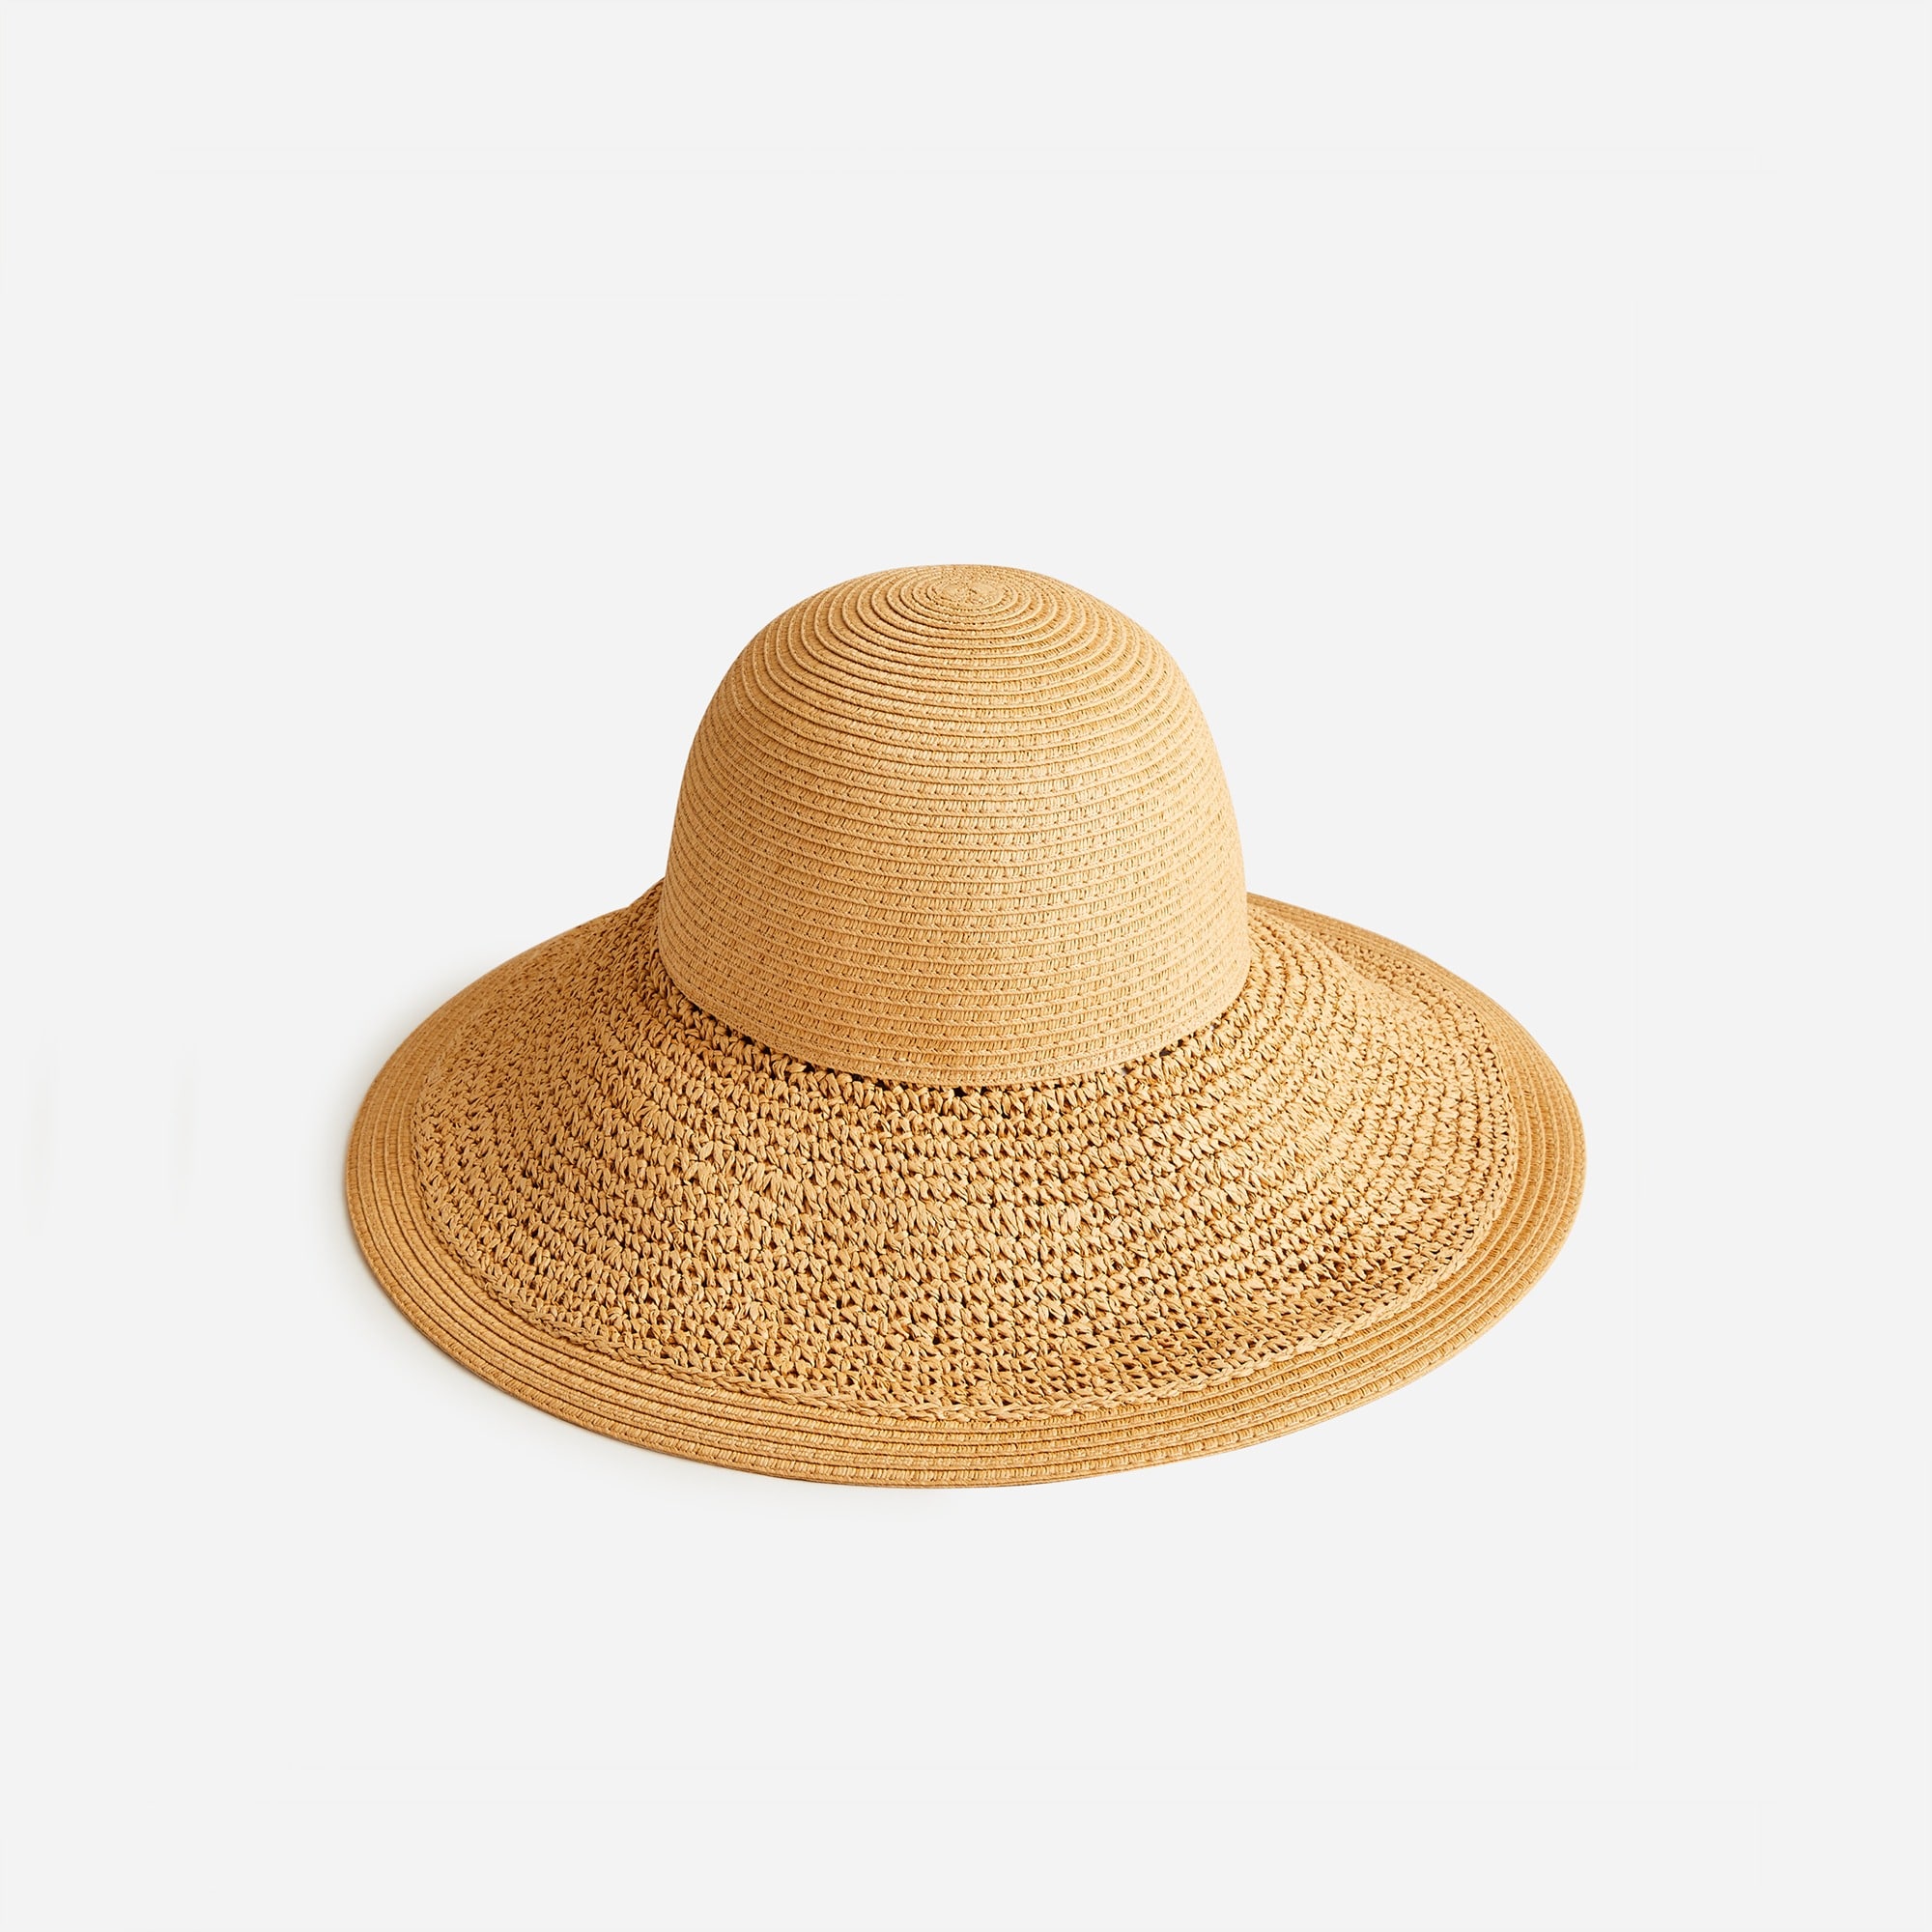  Textured summer straw hat